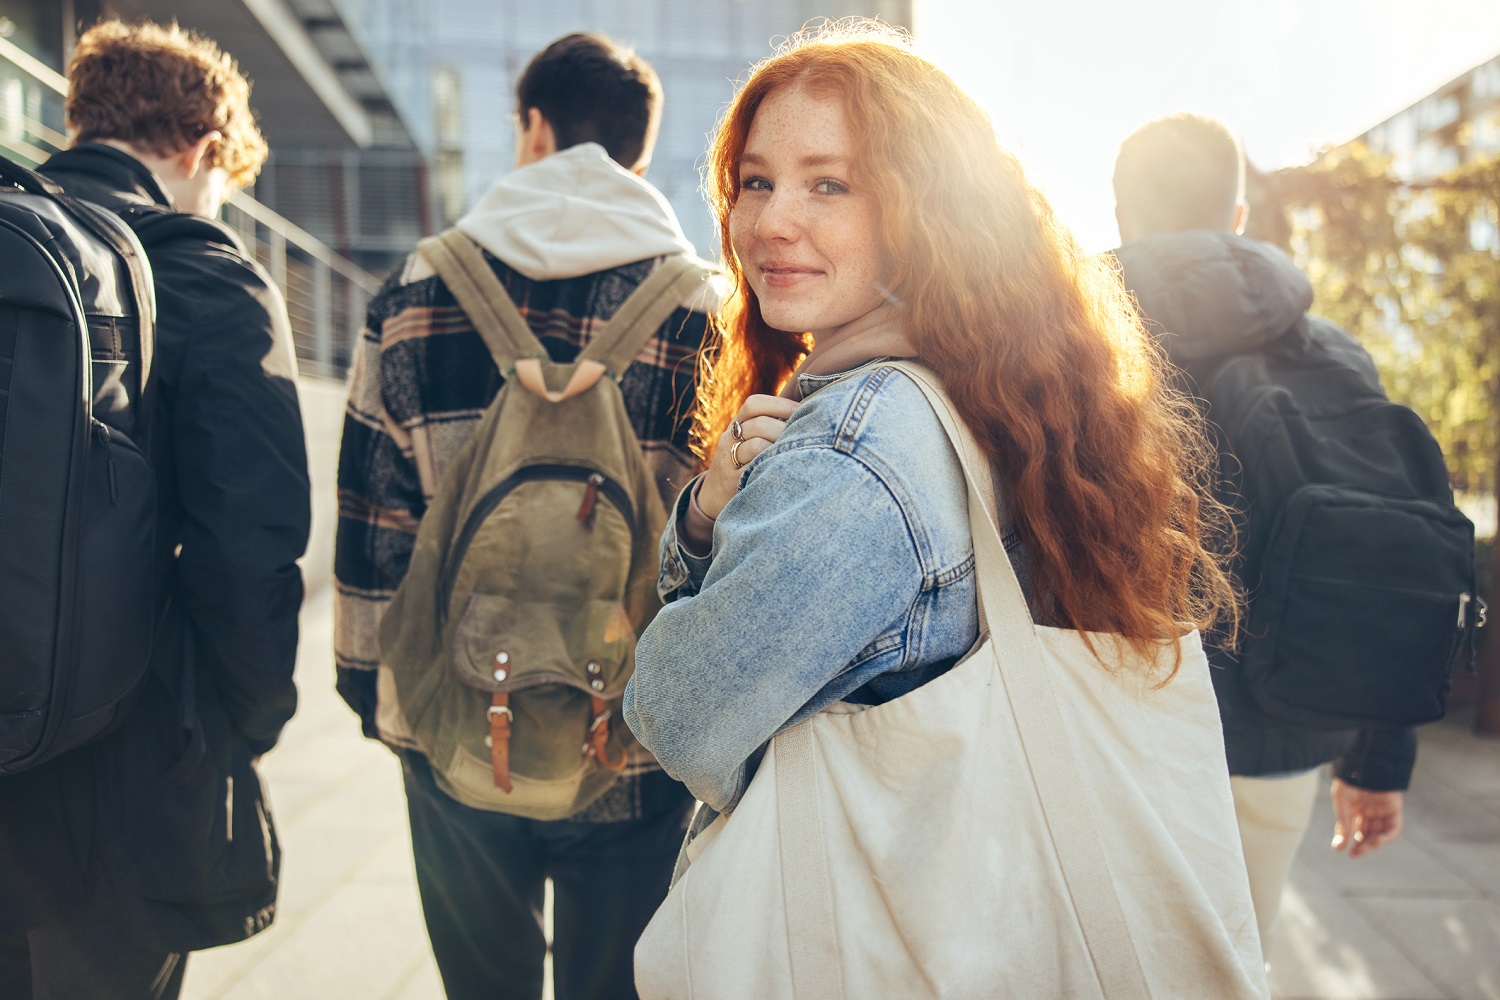 Studentin mit roten Haaren, blickt in die Kamera. Im Hintergrund mehrere Personen und ein Sonnenstrahl.